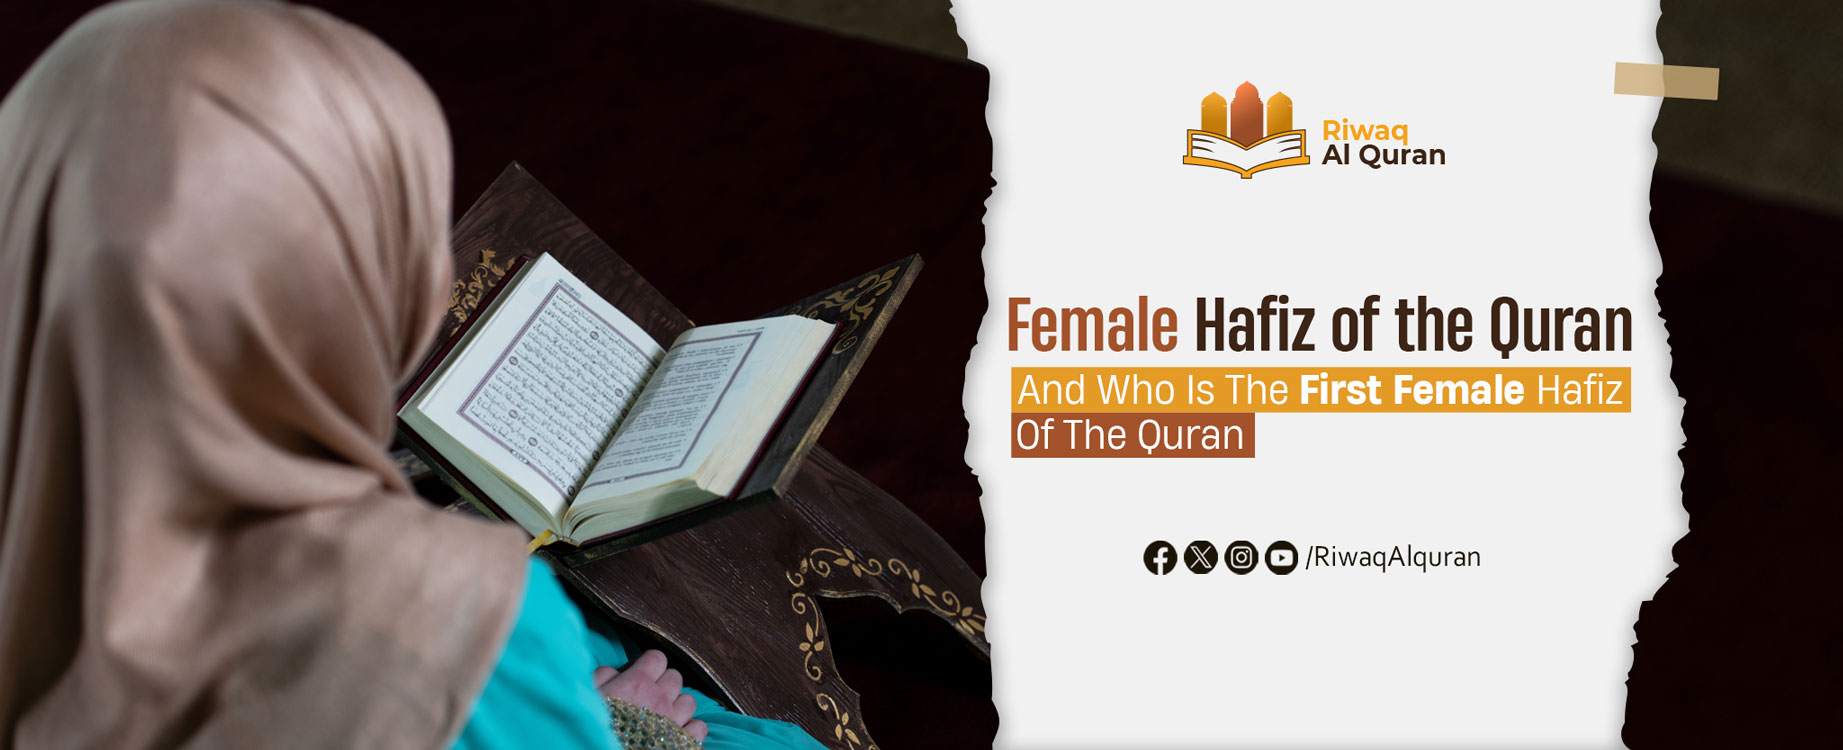 Female Hafiz of the Quran